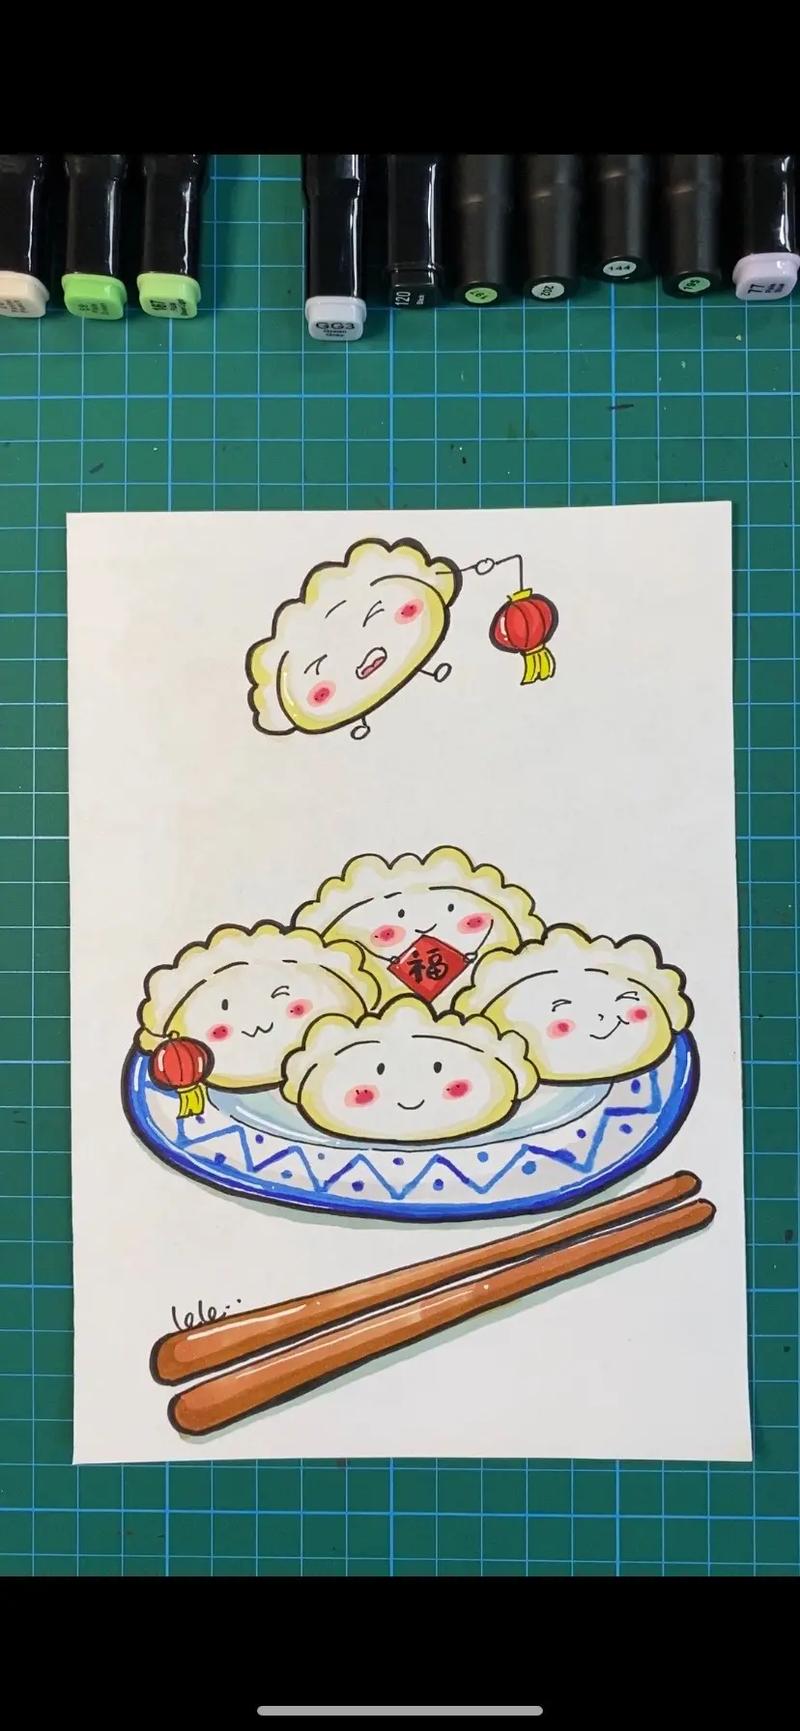 饺子简笔画图片大全 图